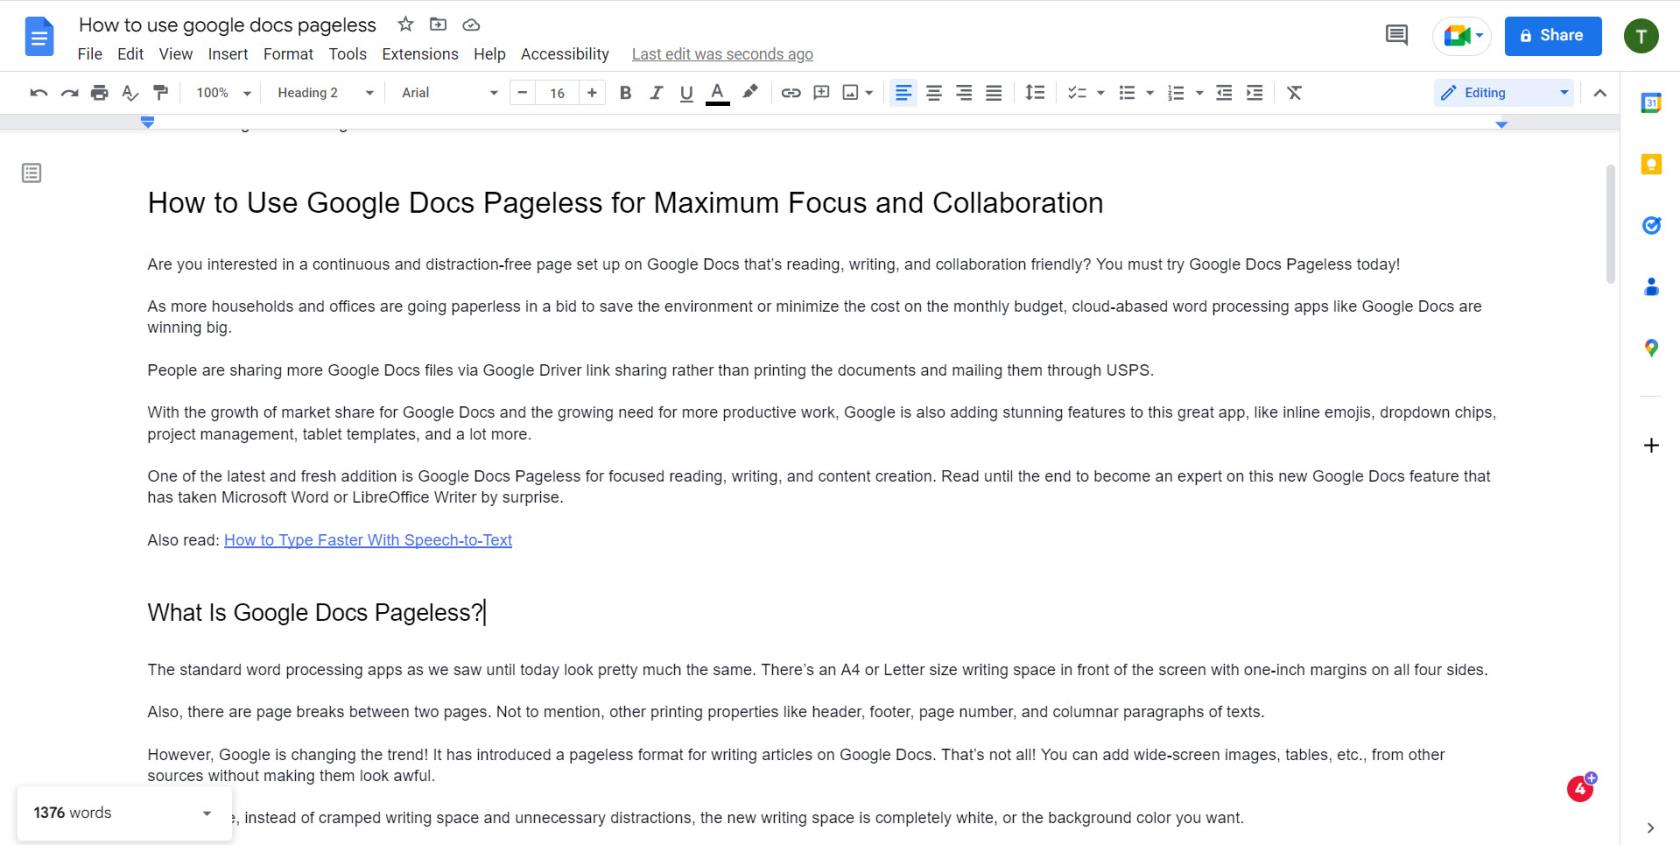 Como usar o Google Docs Pageless para máximo foco e colaboração